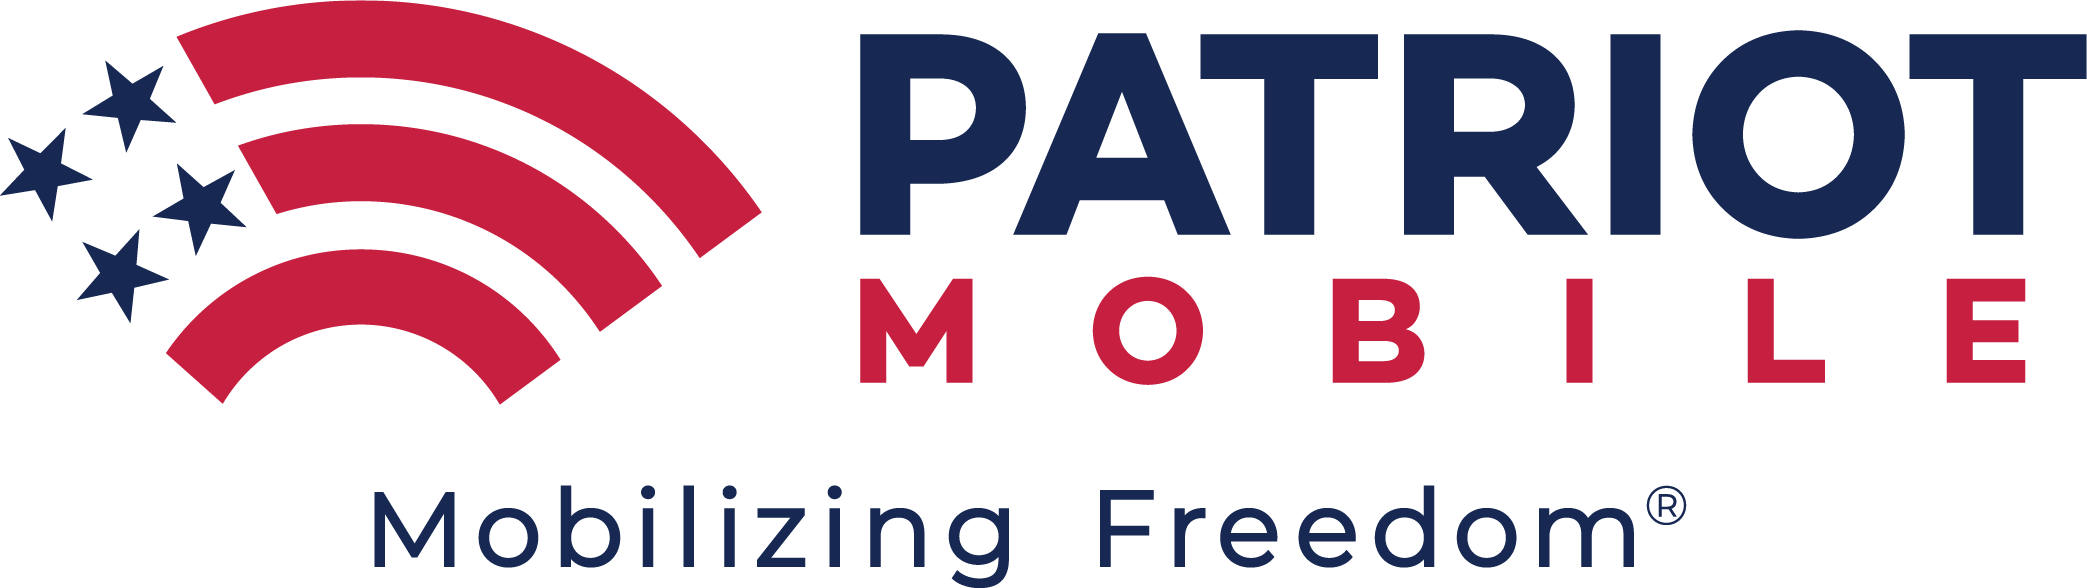 patriotmobile_horiz_1-logo-tagline-full-color-pms-c (1) (2).png